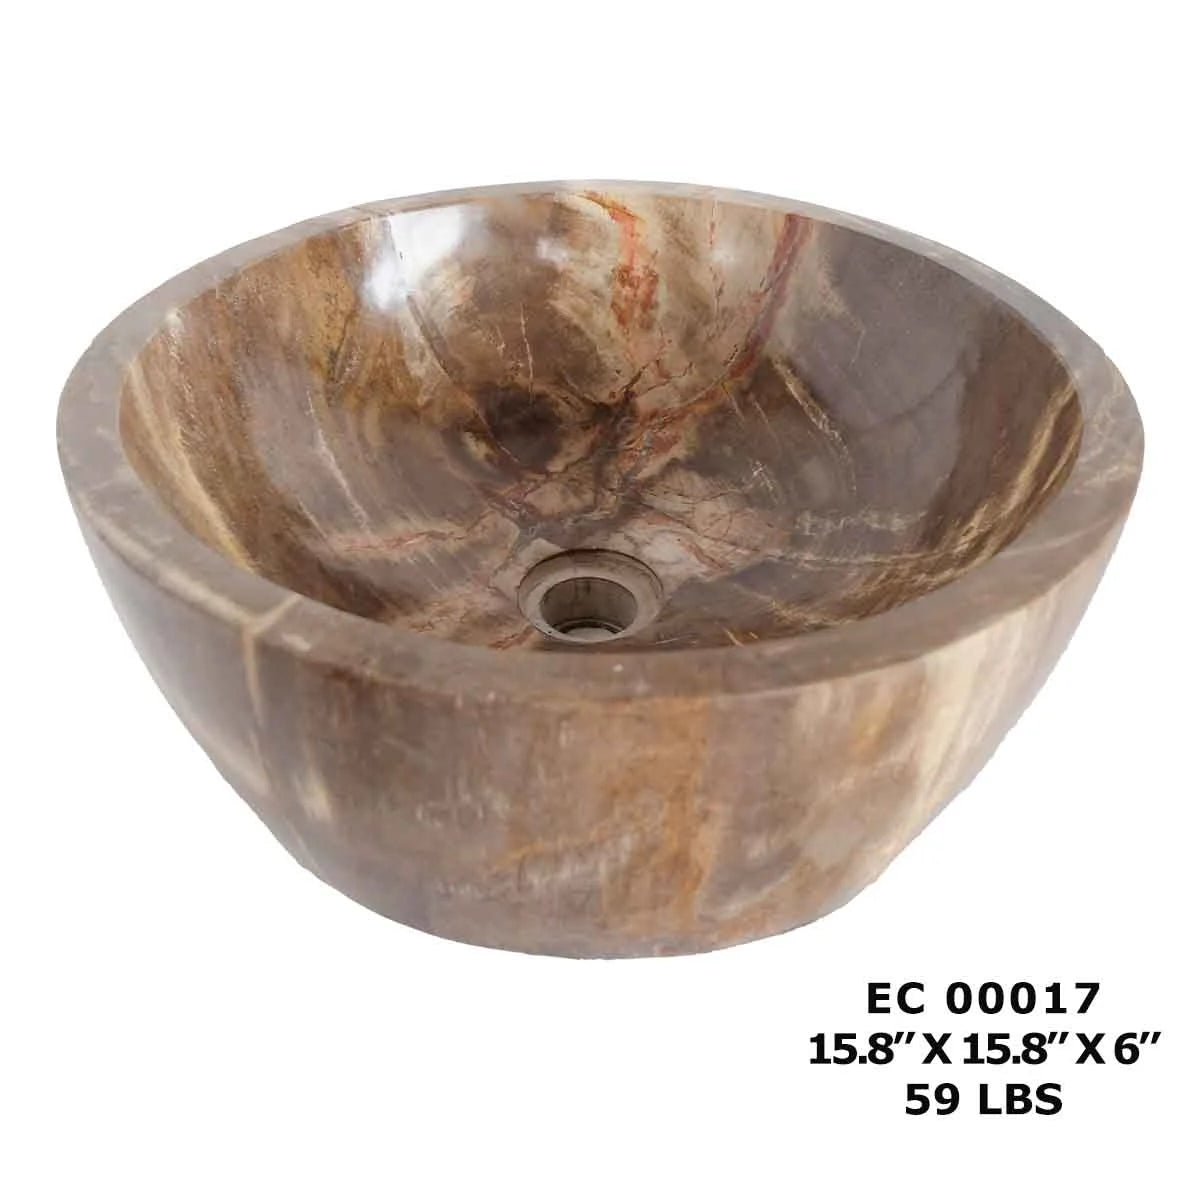 Petrified Wood Bathroom Vanity Vessel Sink, Bowl Kitchen Sink EC00017